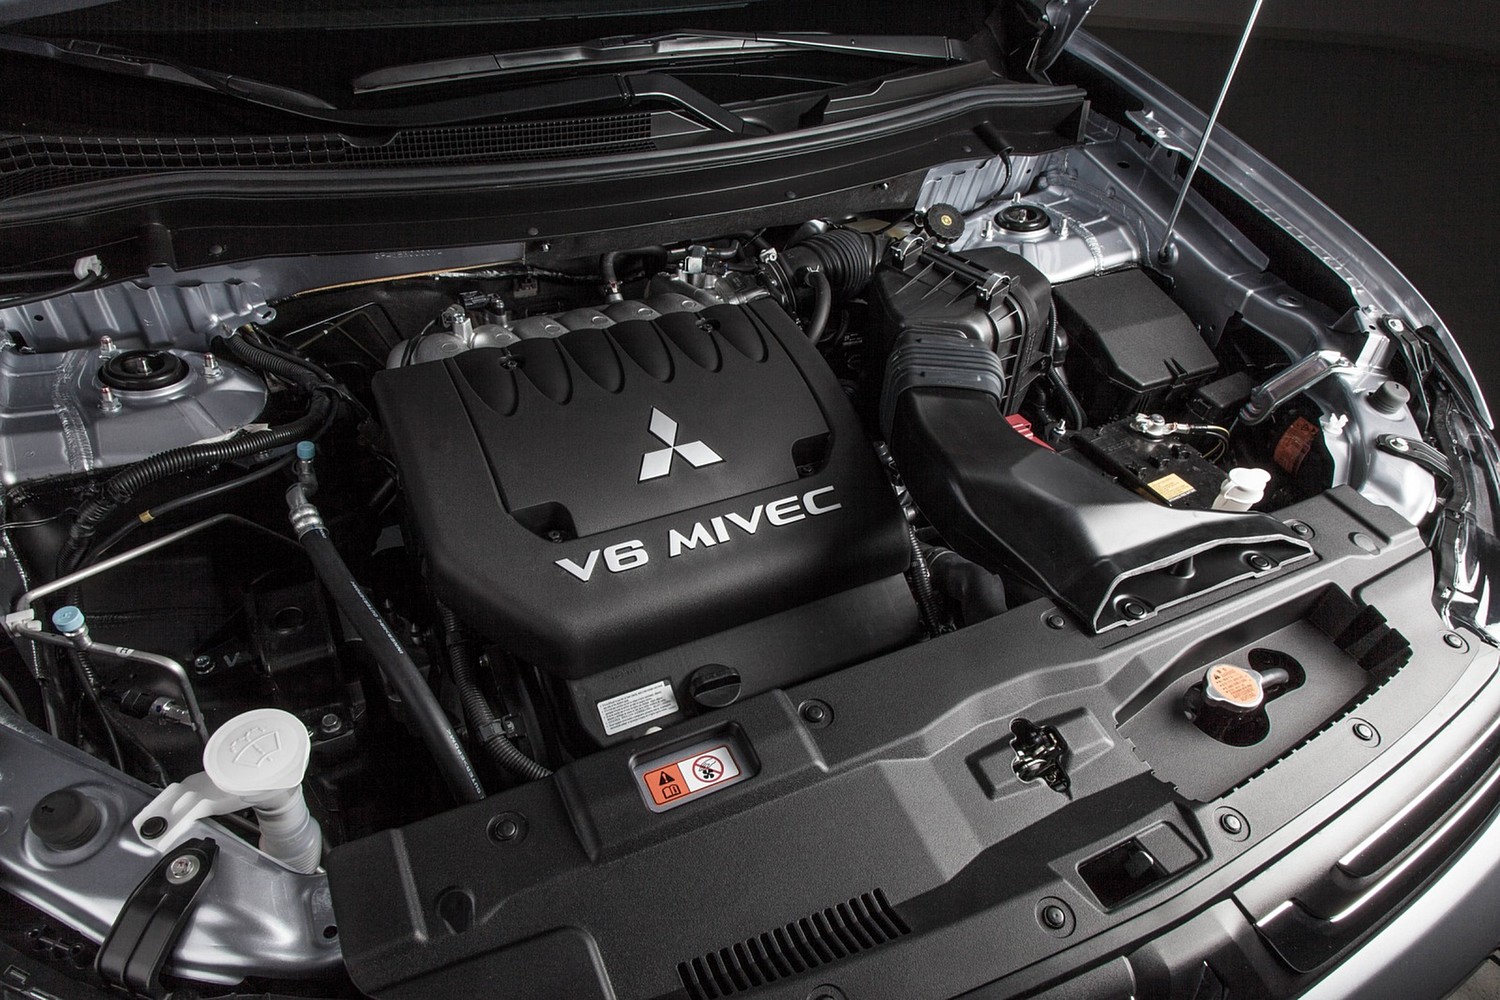 Mitsubishi Outlander GT 3.0L V6 Engine (2014 model year shown)